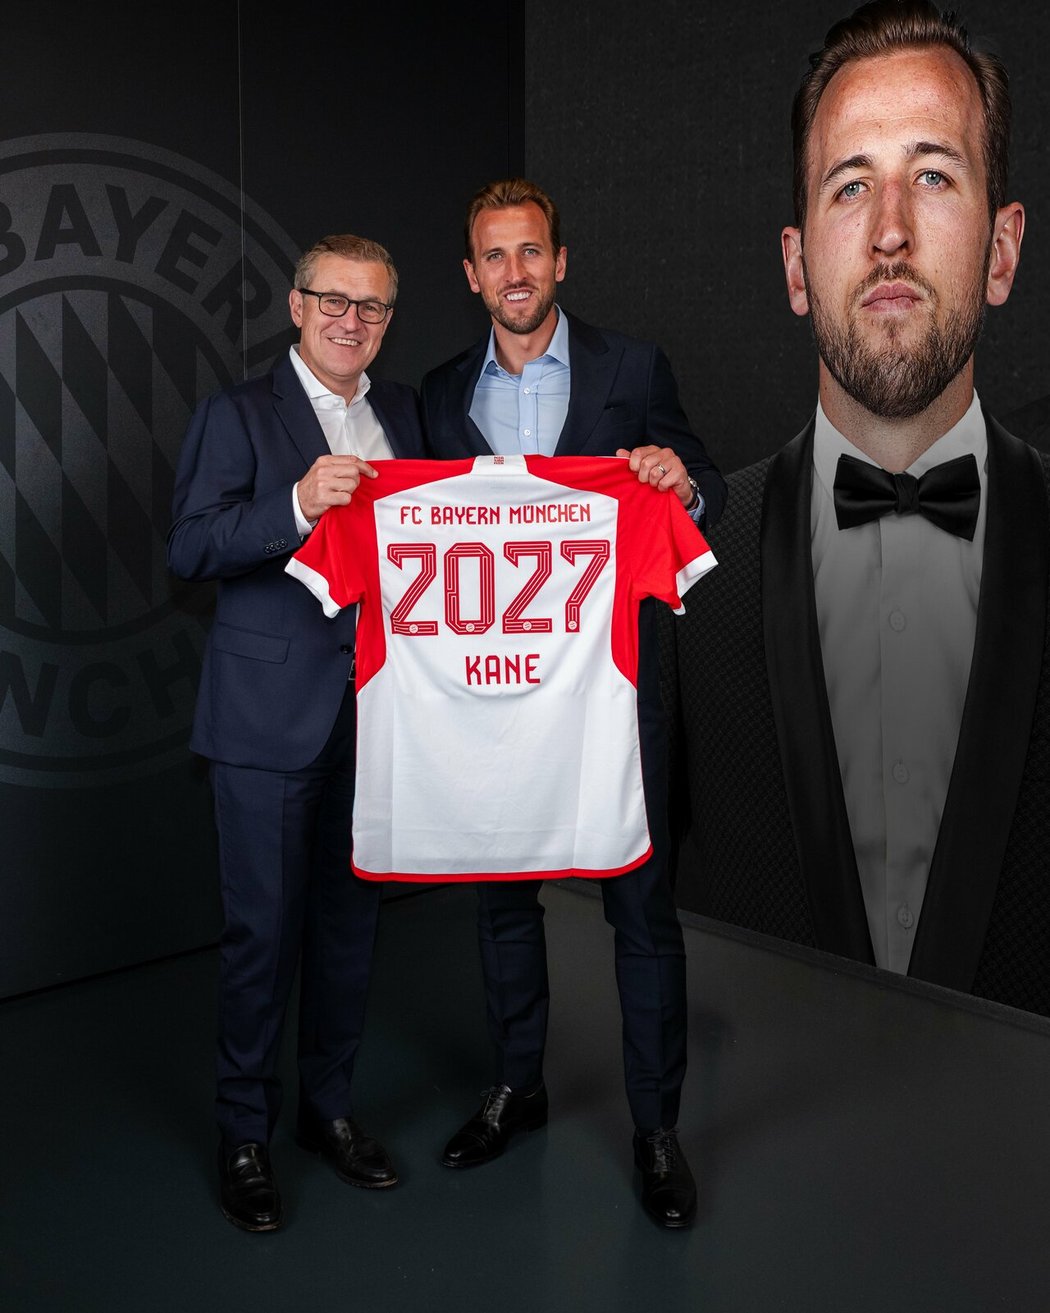 Harry Kane podepsal smlouvu s Bayernem Mnichov